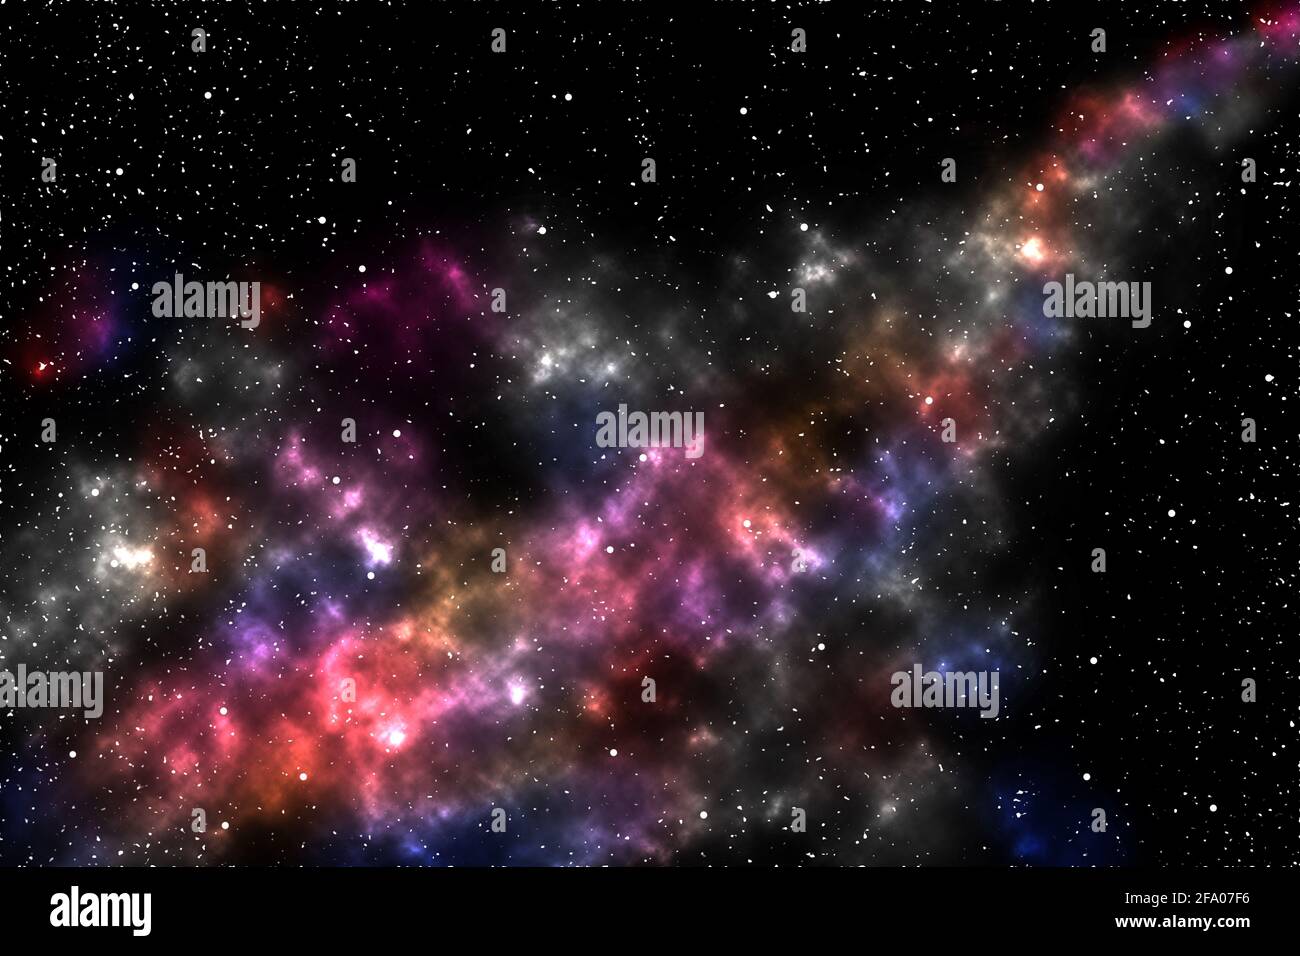 Abstrakter Raum im Hintergrund. Abbildung eines großen Sternhaufen, bunter Nebel. Stockfoto